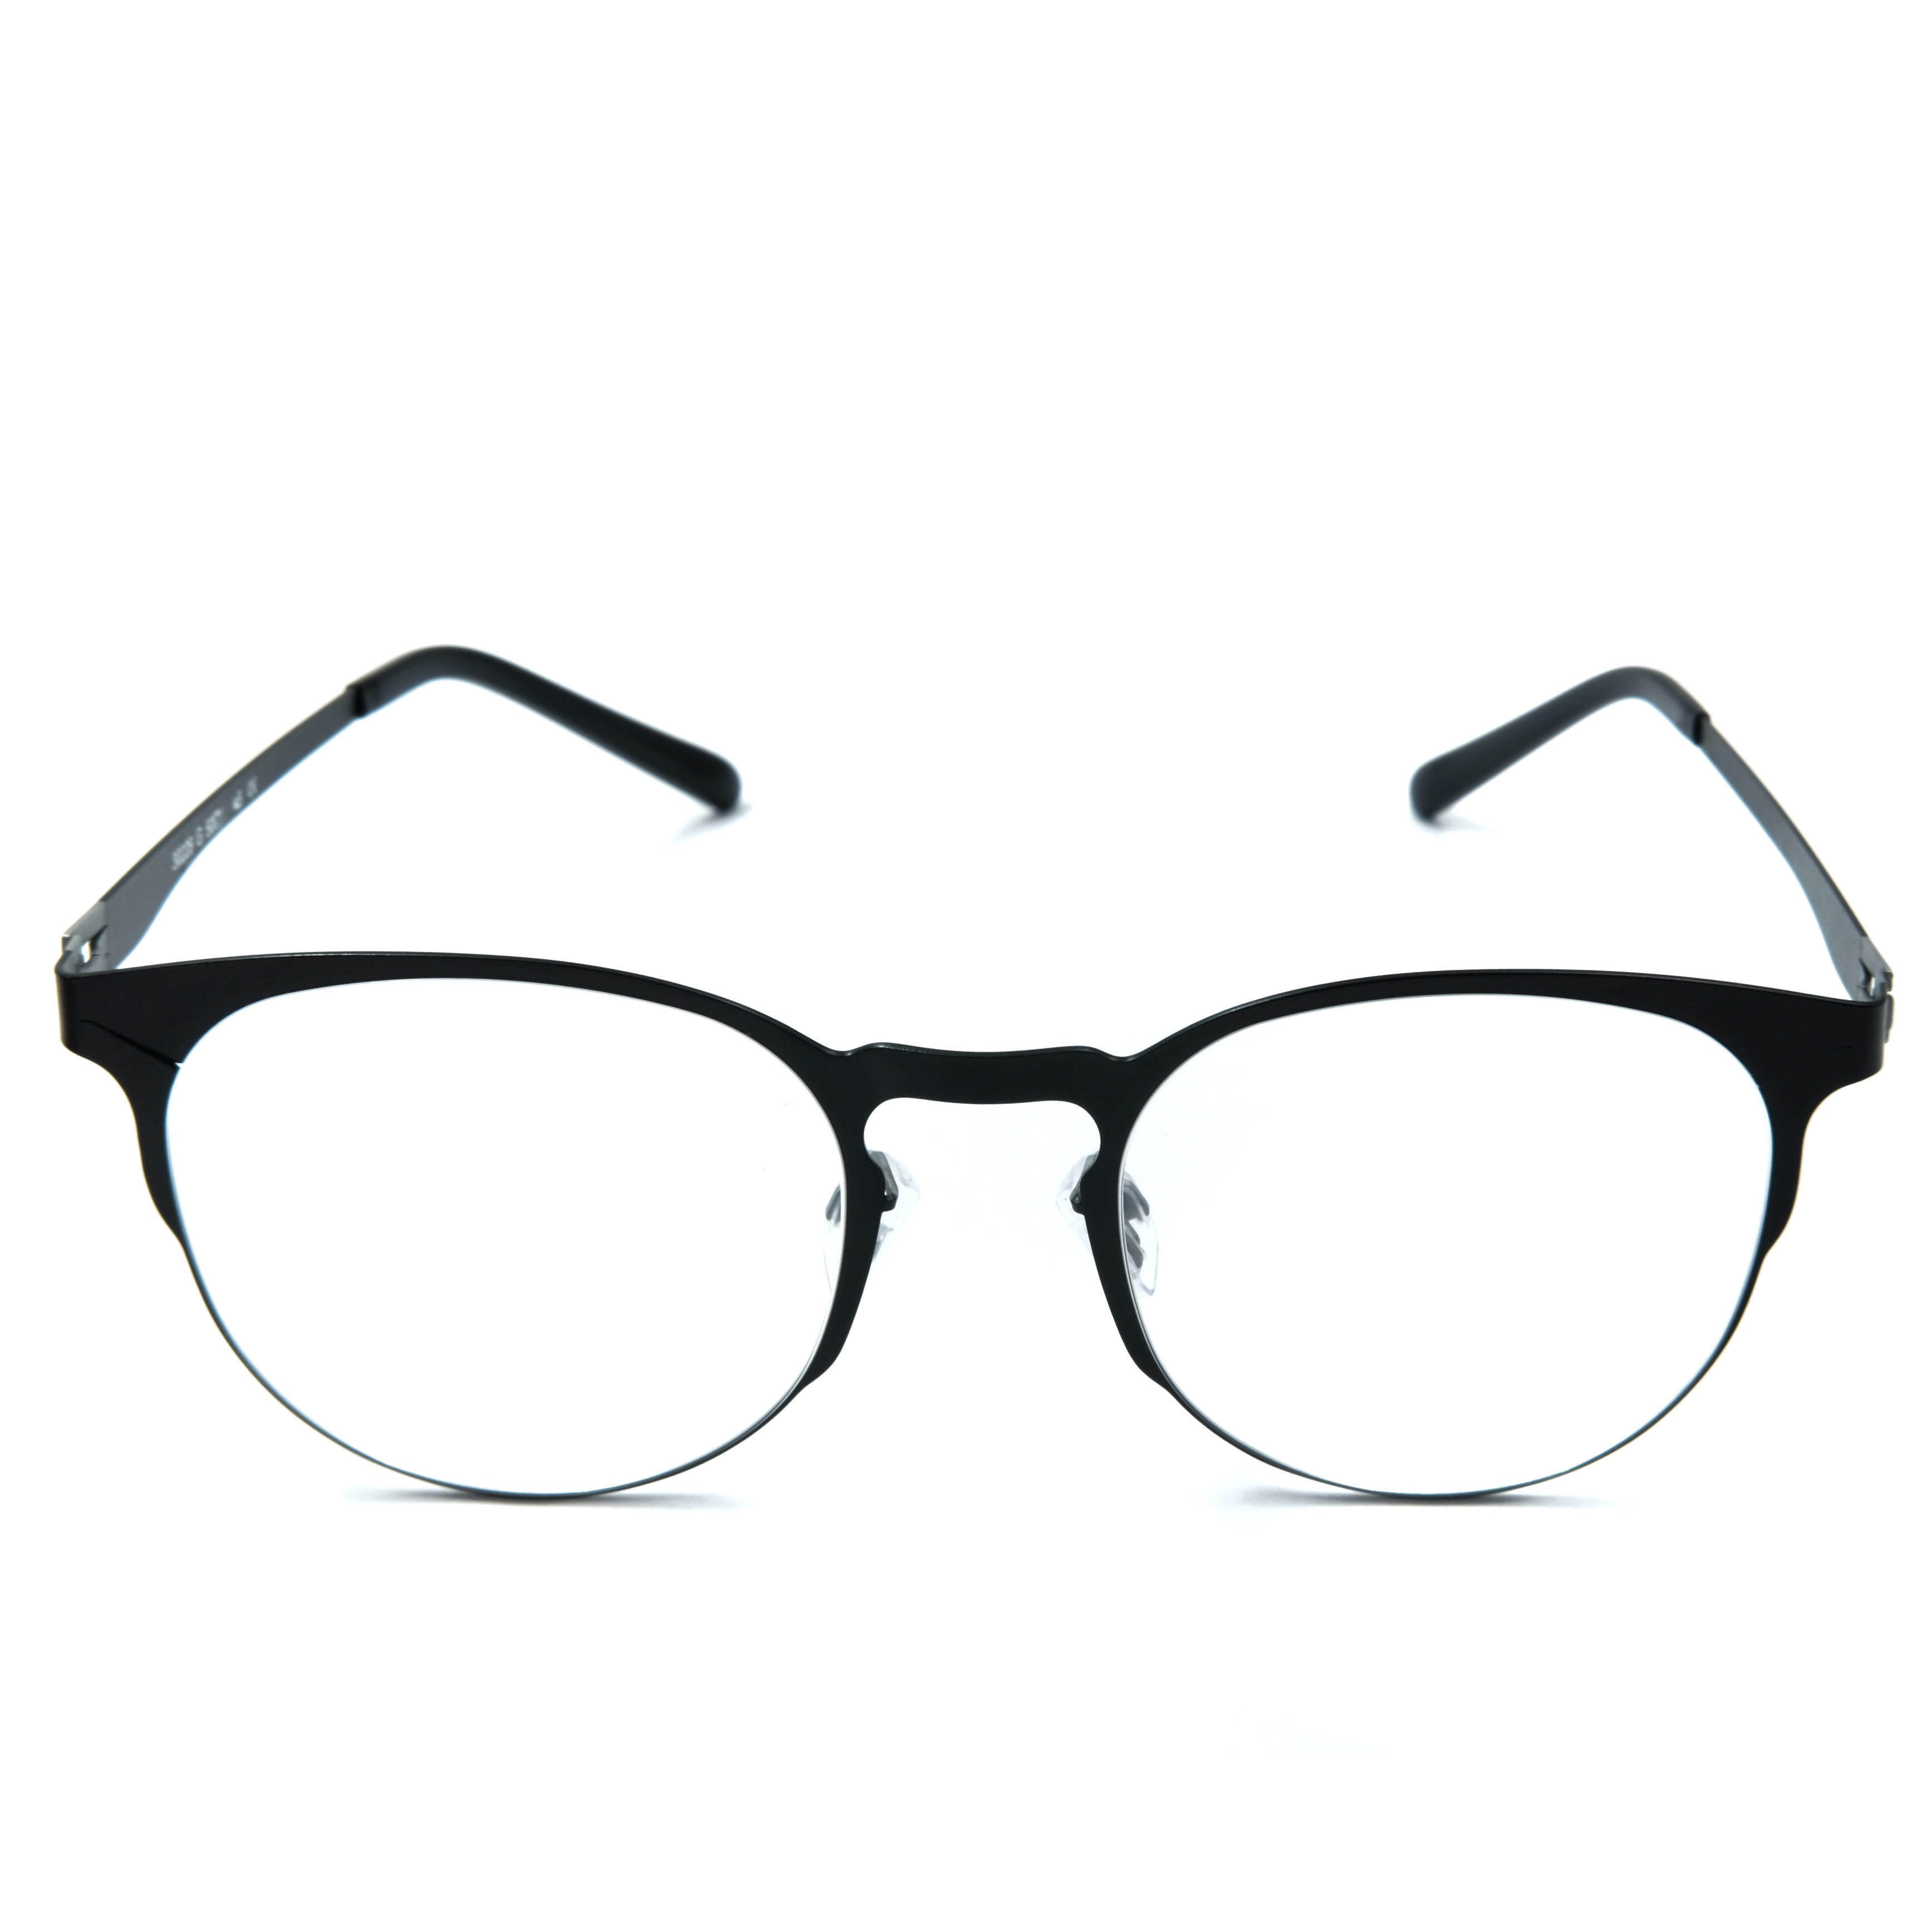 Acetate Eyeglasses Frame Free Hinge Round Rim Custom Reading Glasses Blue Light Glasses Supplier